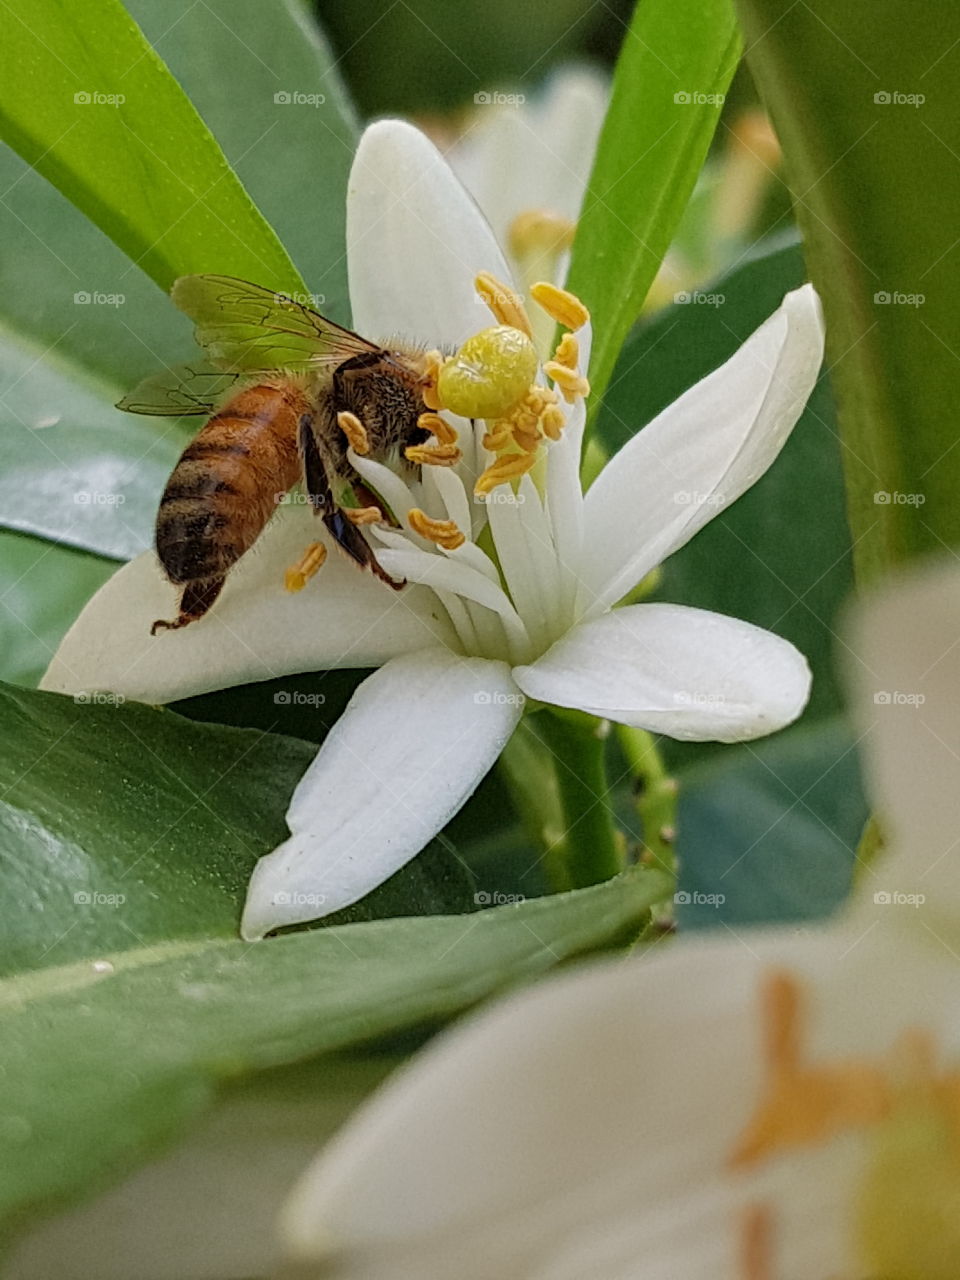 bee on the orange's flower